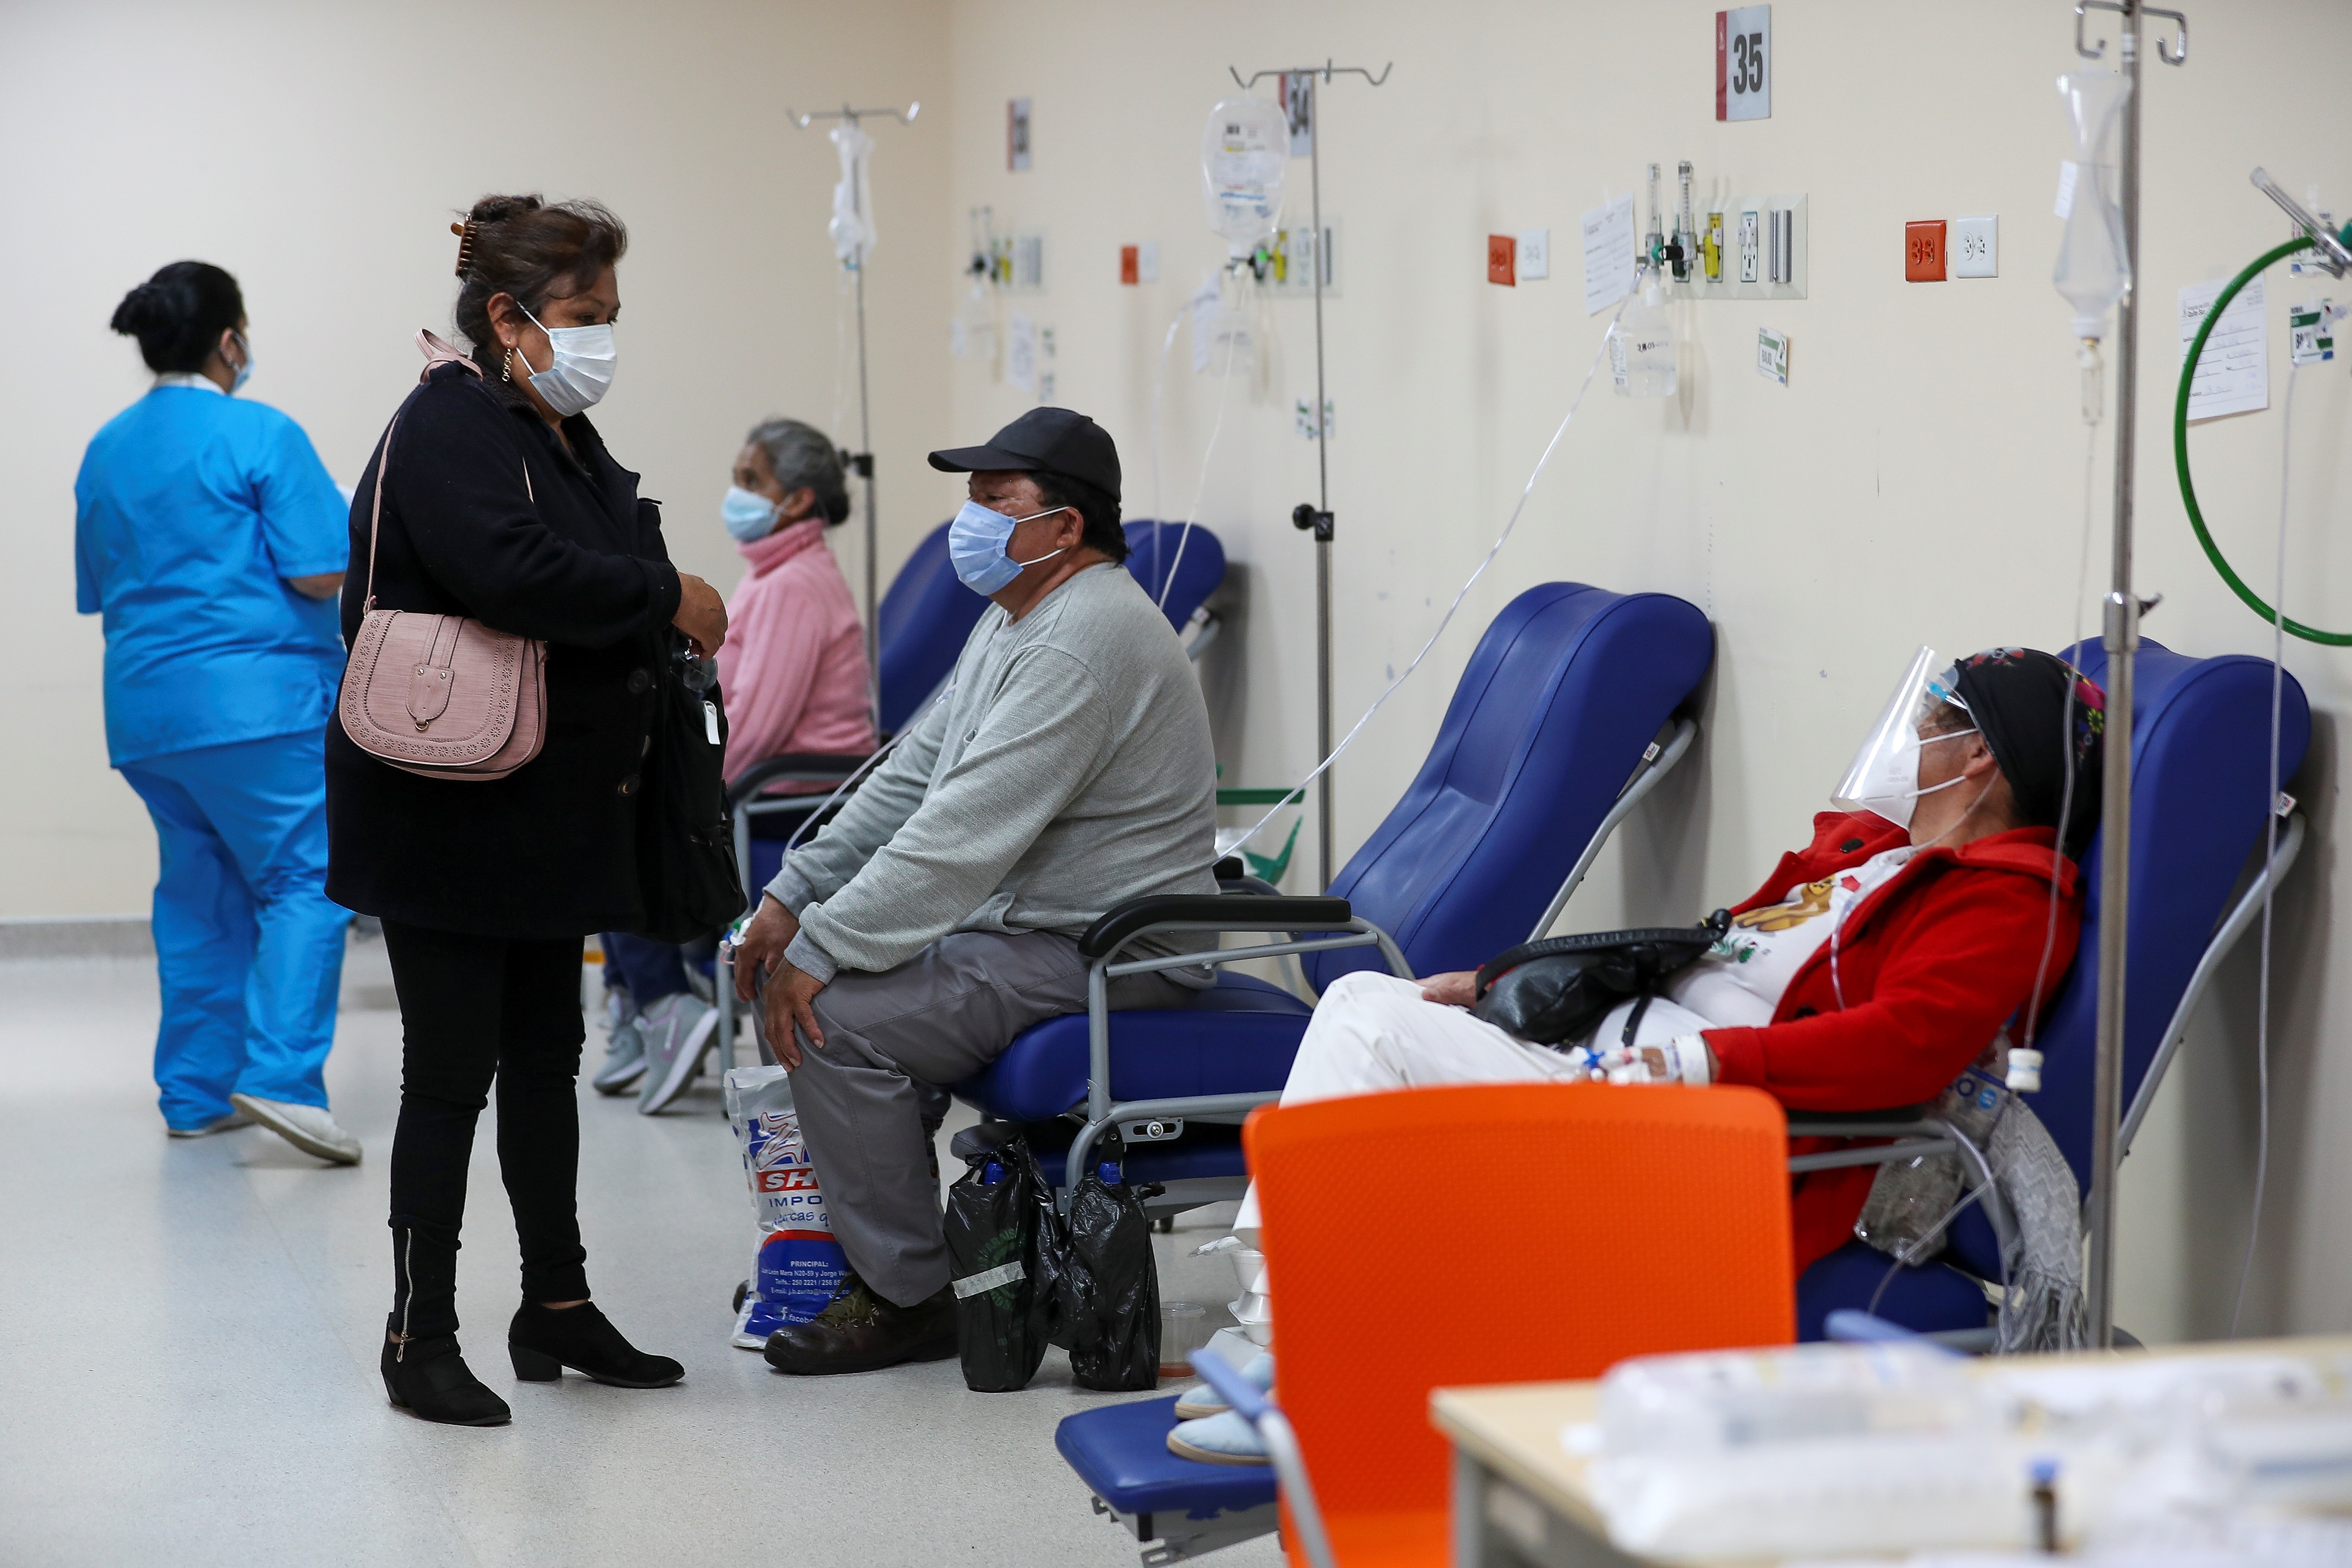 Vista de la unidad de emergencia con pacientes covid-19 del hospital Iess del Sur, el 29 de marzo de 2021, en Quito (Ecuador). EFE/Jose Jacome
